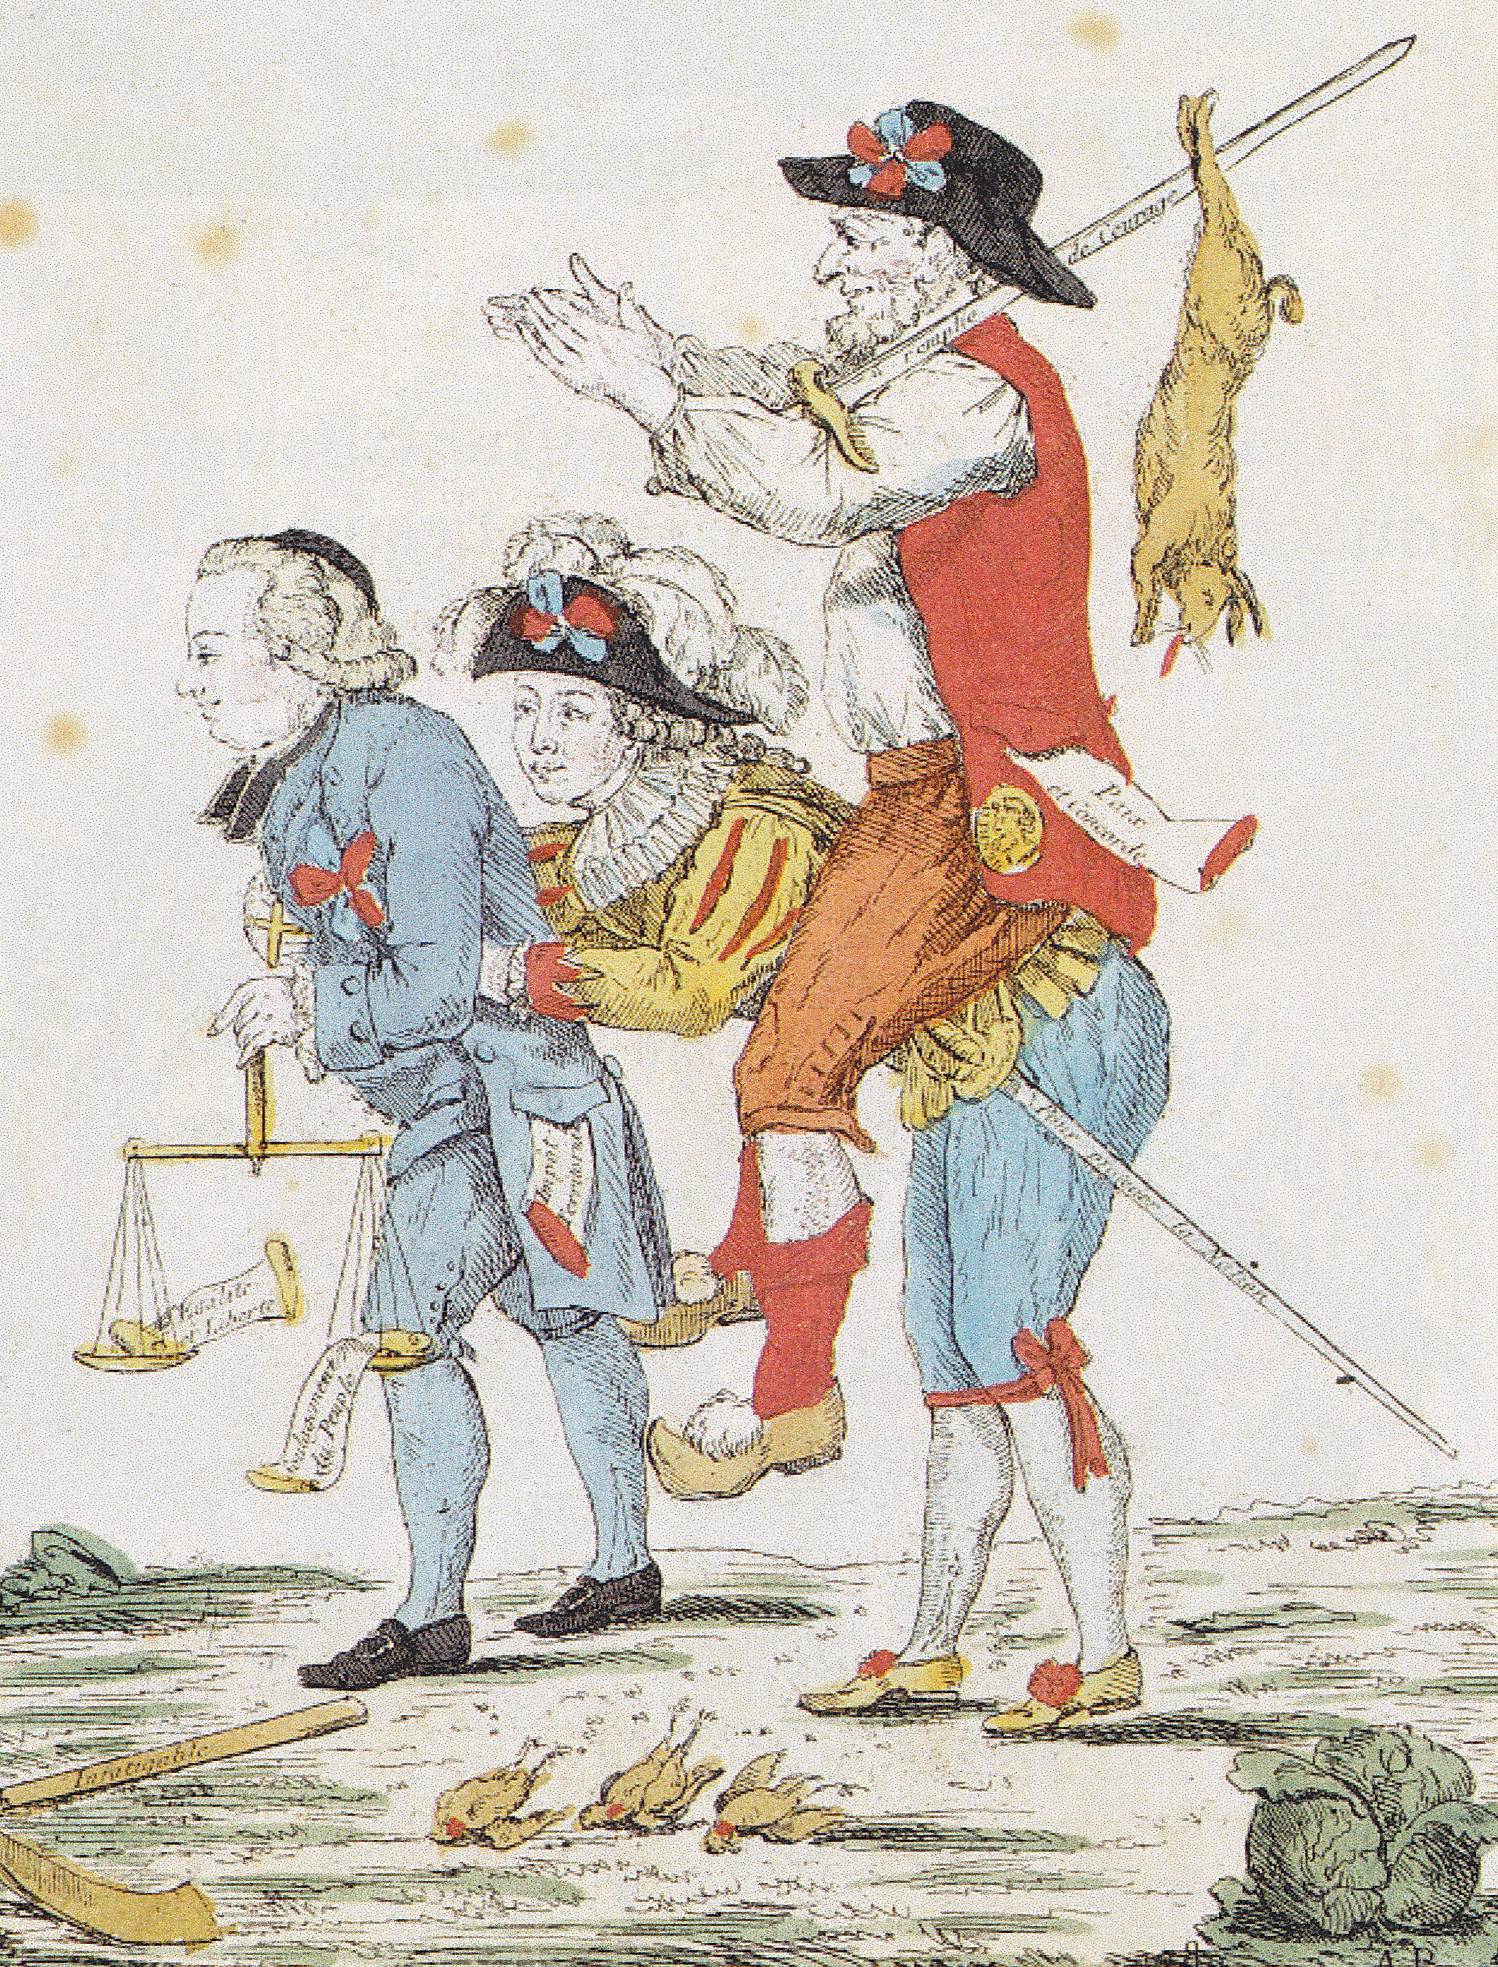 Рисунок французская революция 18 века